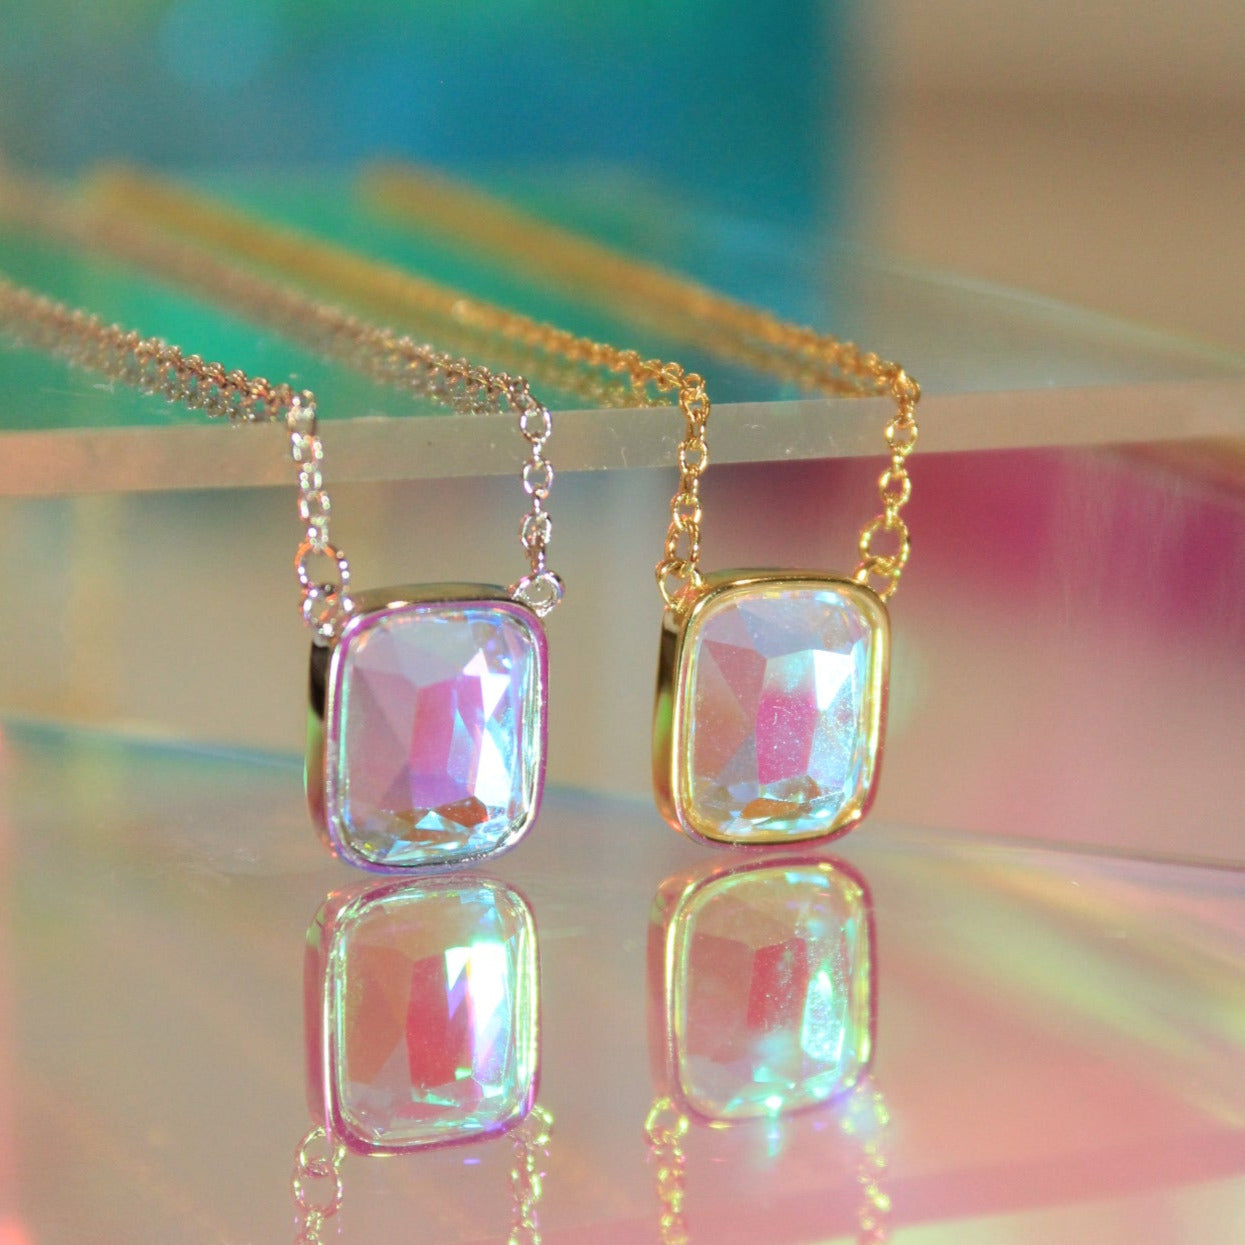 Buy Angel Aura Quartz Pendant Aura Quartz Pendant Healing Crystal Necklace  Angel Aura Quartz Necklace Polished Aura Quartz Crystal Charm Online in  India - Etsy